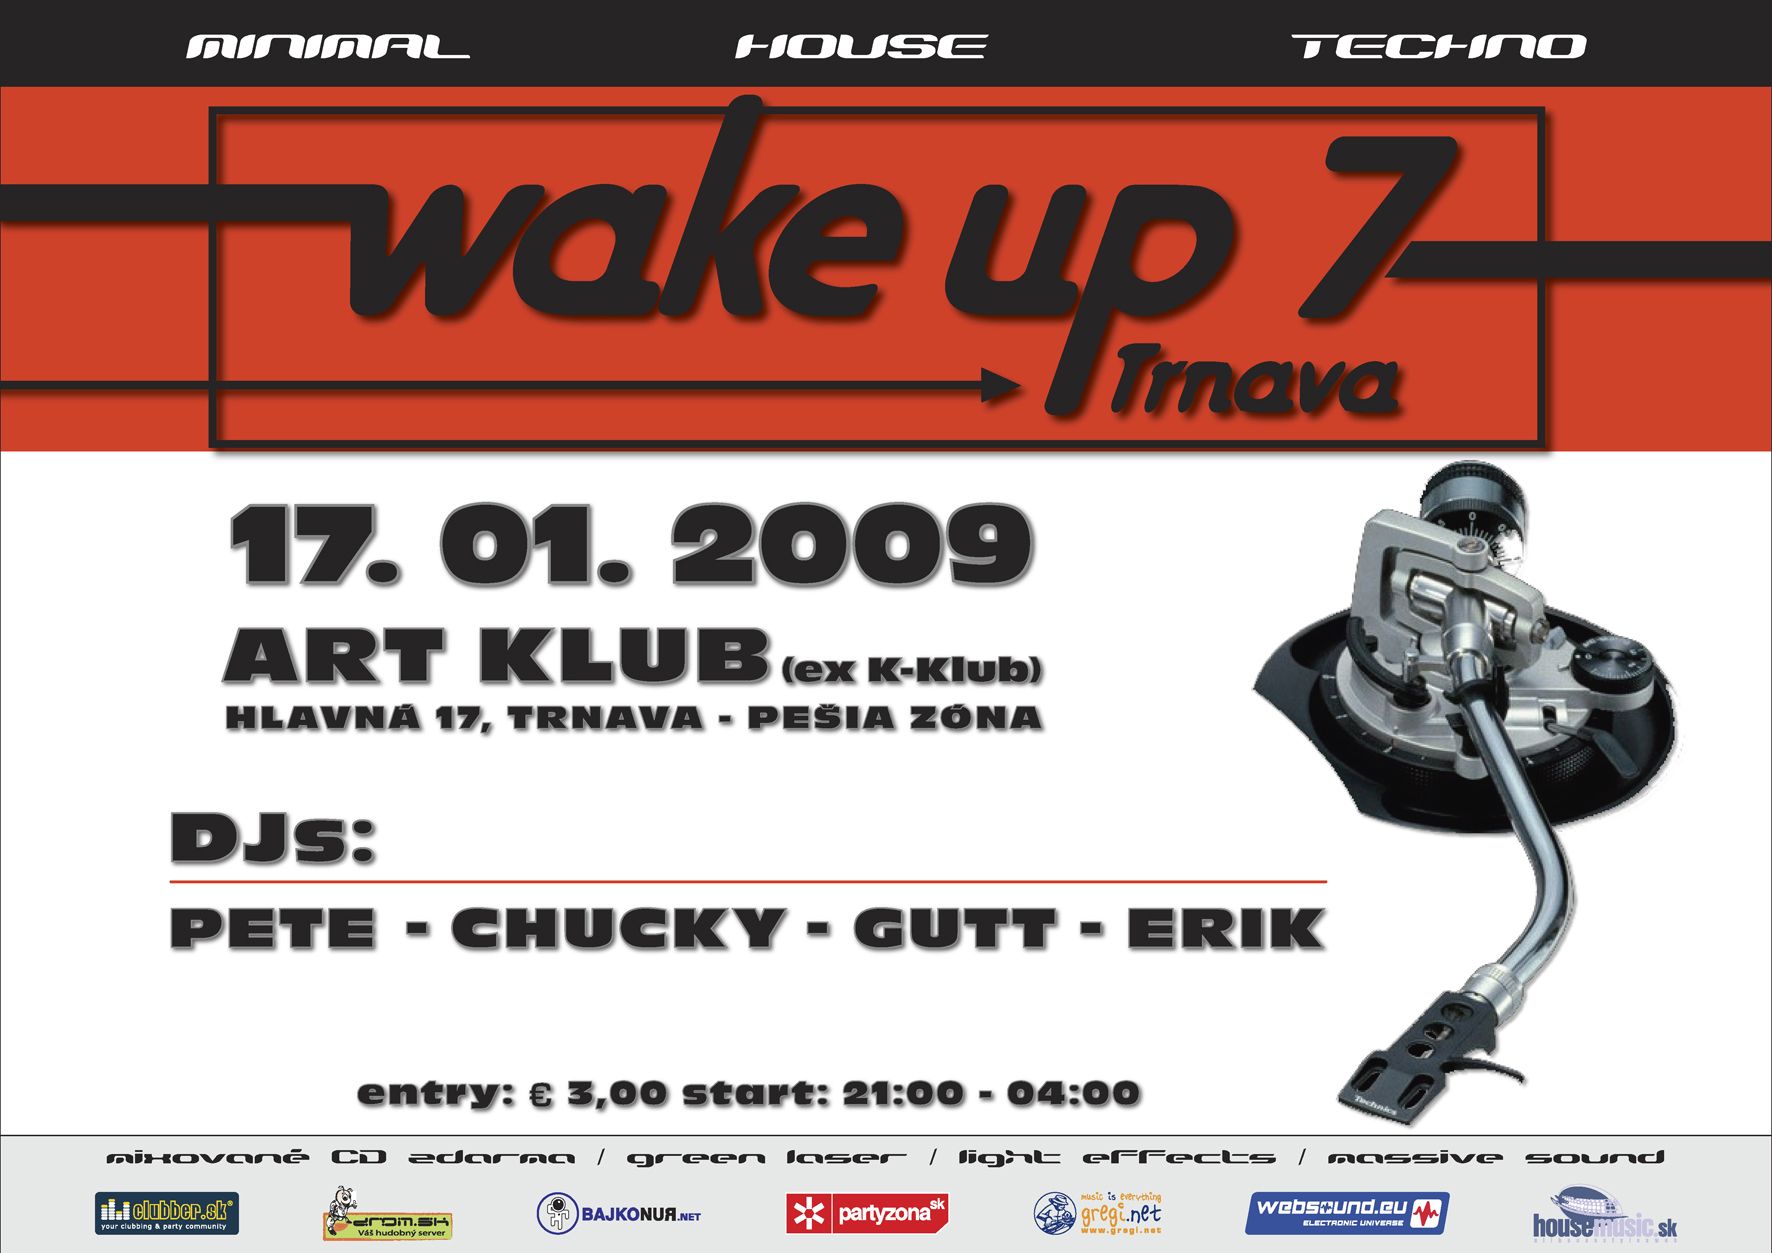 WAKE UP 7 - 17.01.2009